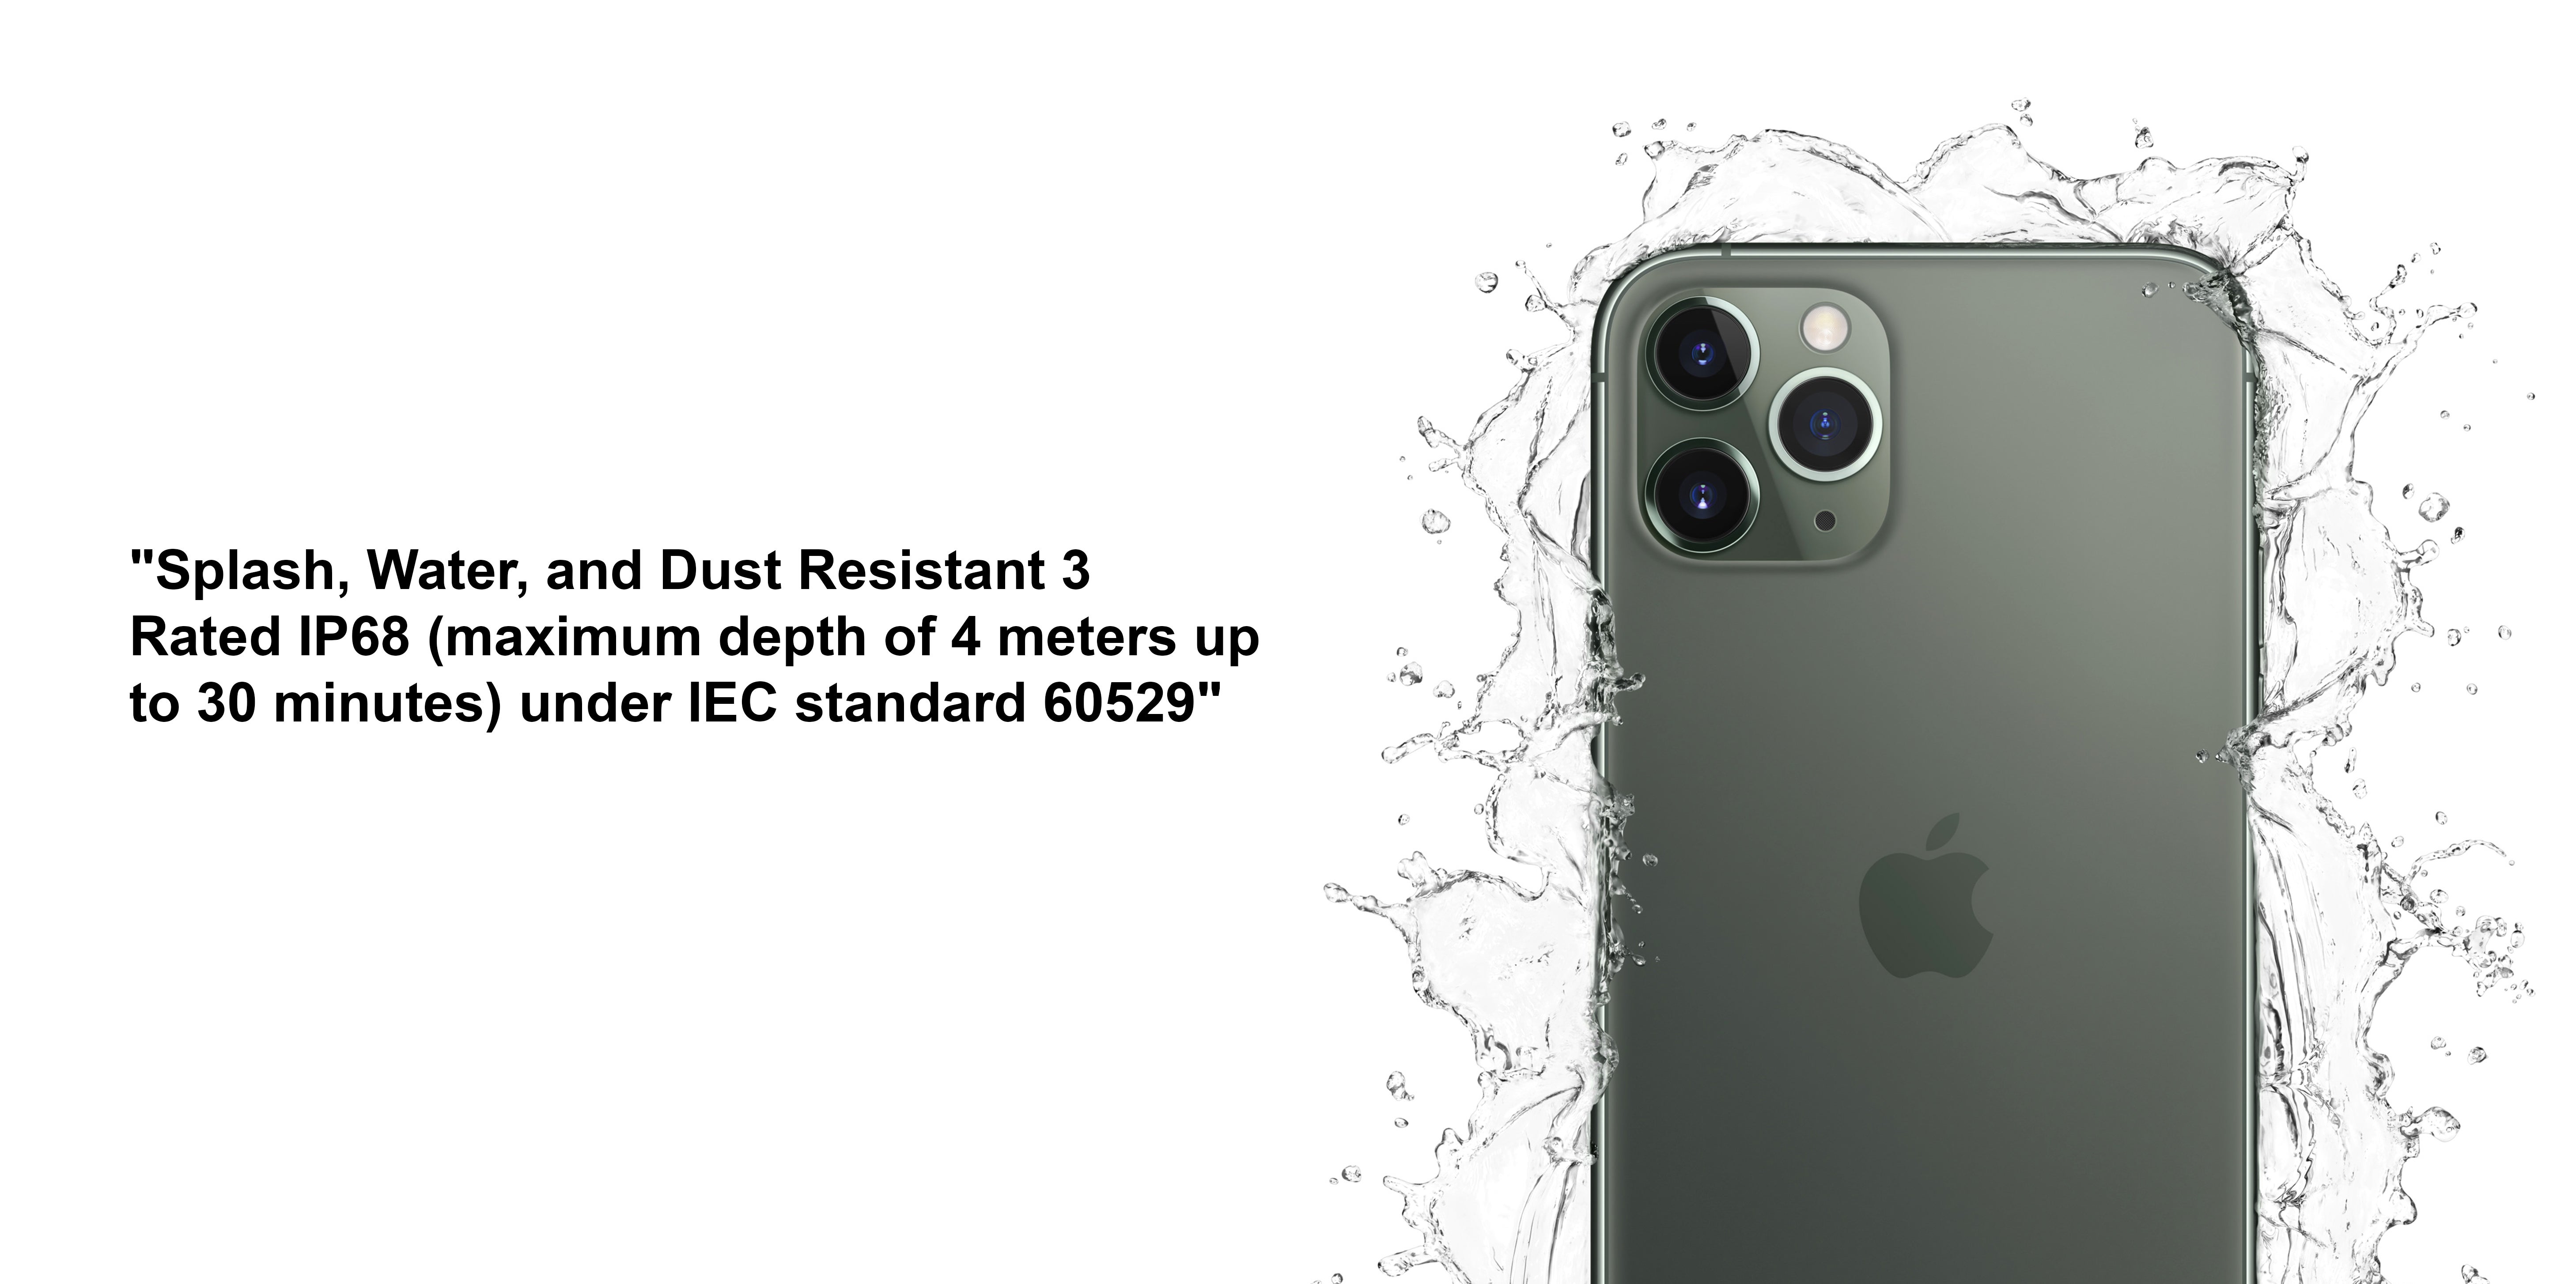 15 pro max 256 esim. Apple iphone 11 Pro Max Dual SIM. Apple iphone 14 Pro Max Dual SIM 256 ГБ Dual SIM. Iphone 14 Pro Max Dual SIM. ￼ заднее стекло iphone 11 Pro Max Midnight Green - big hole.